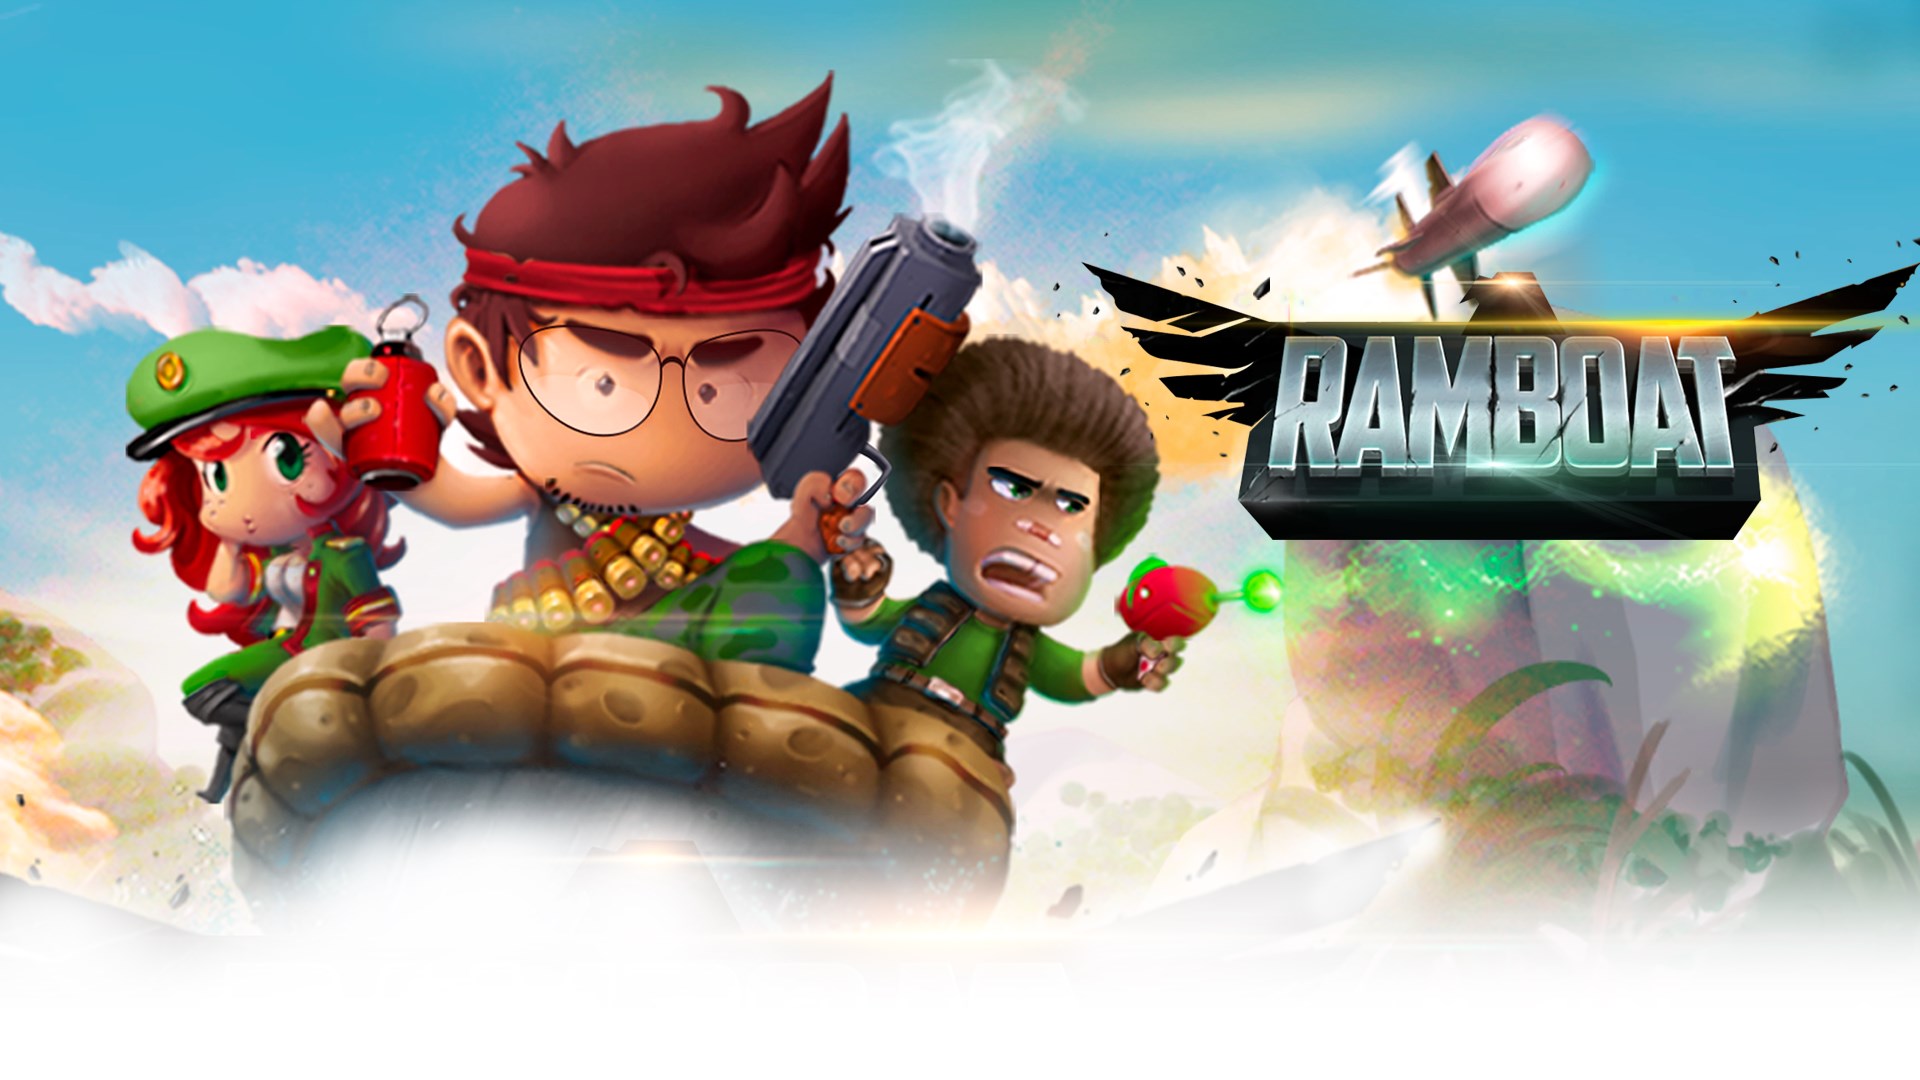 ดาวน์โหลด Ramboat – Jumping Shooter Game (MOD, Unlimited Gold / Gems) ฟรีบน Android icon